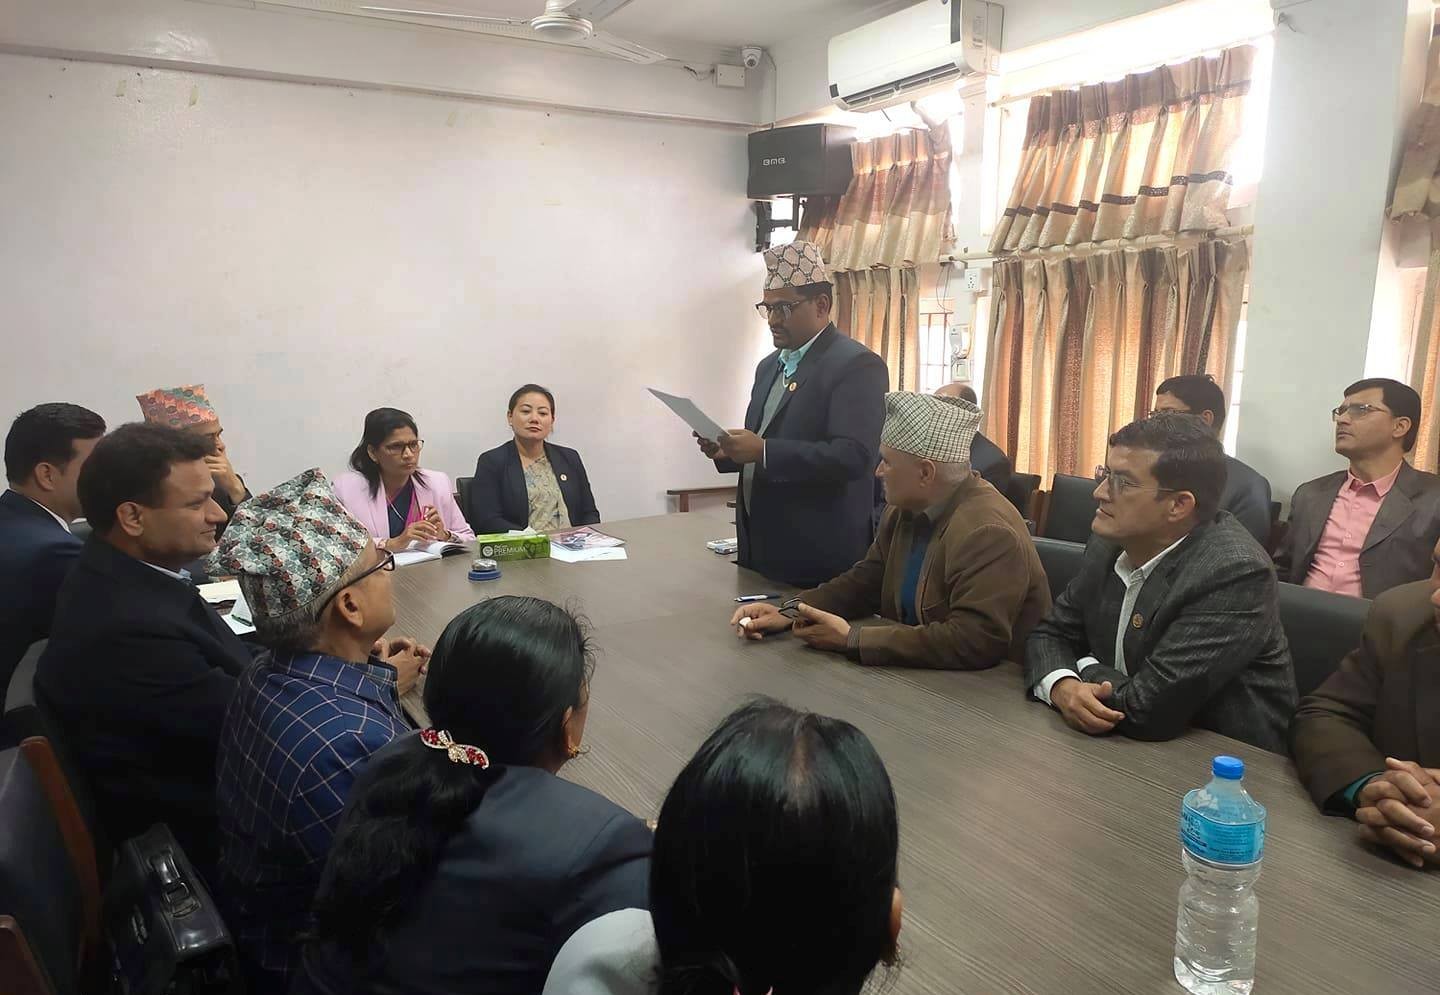 अन्तर्राष्ट्रिय सीमा सरोकार समूह कञ्चनपुरको टोली काठमाण्डौँ प्रस्थान